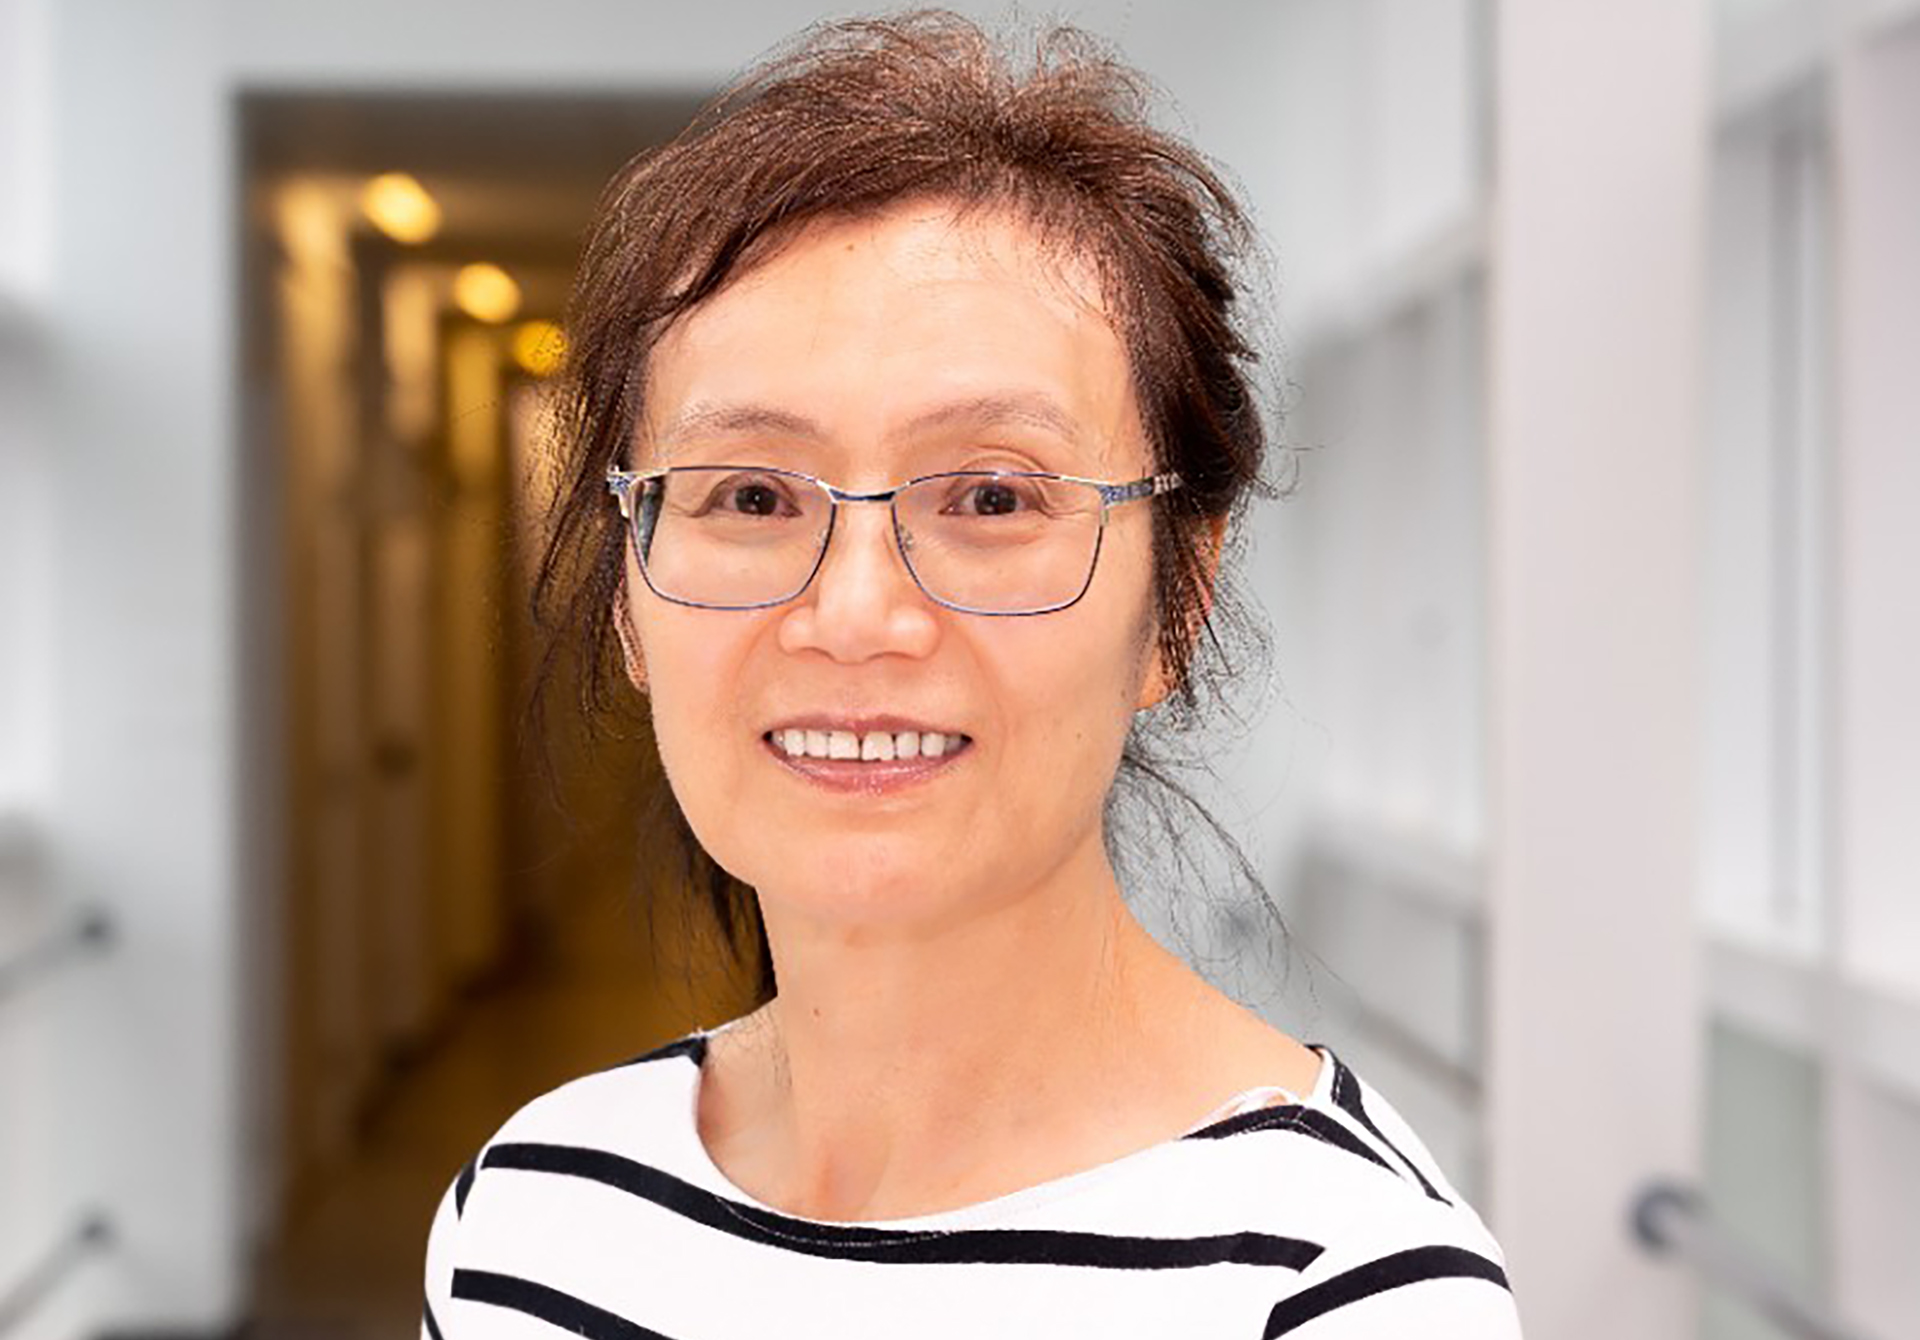 Professor Fang Gao Smith